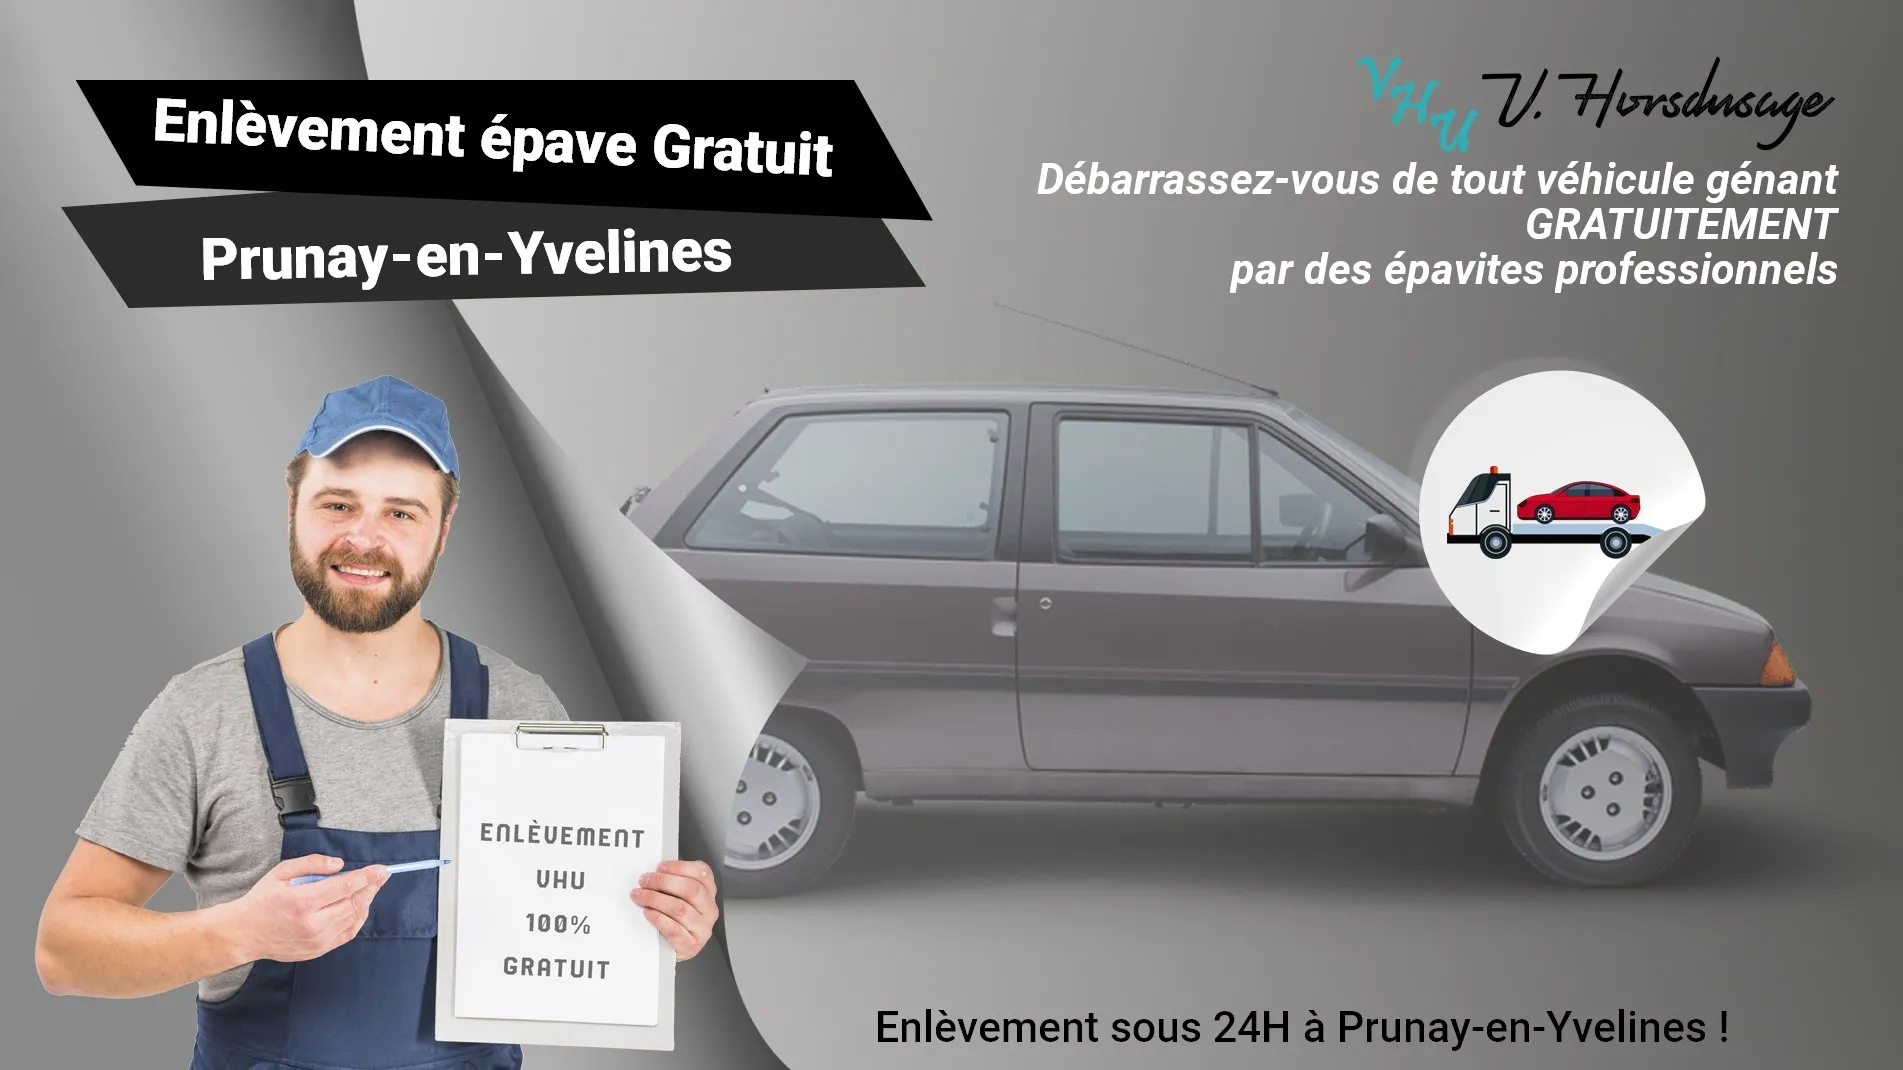 Pour un enlèvement gratuit à Prunay-en-Yvelines, contactez nos épavistes agréé VHU